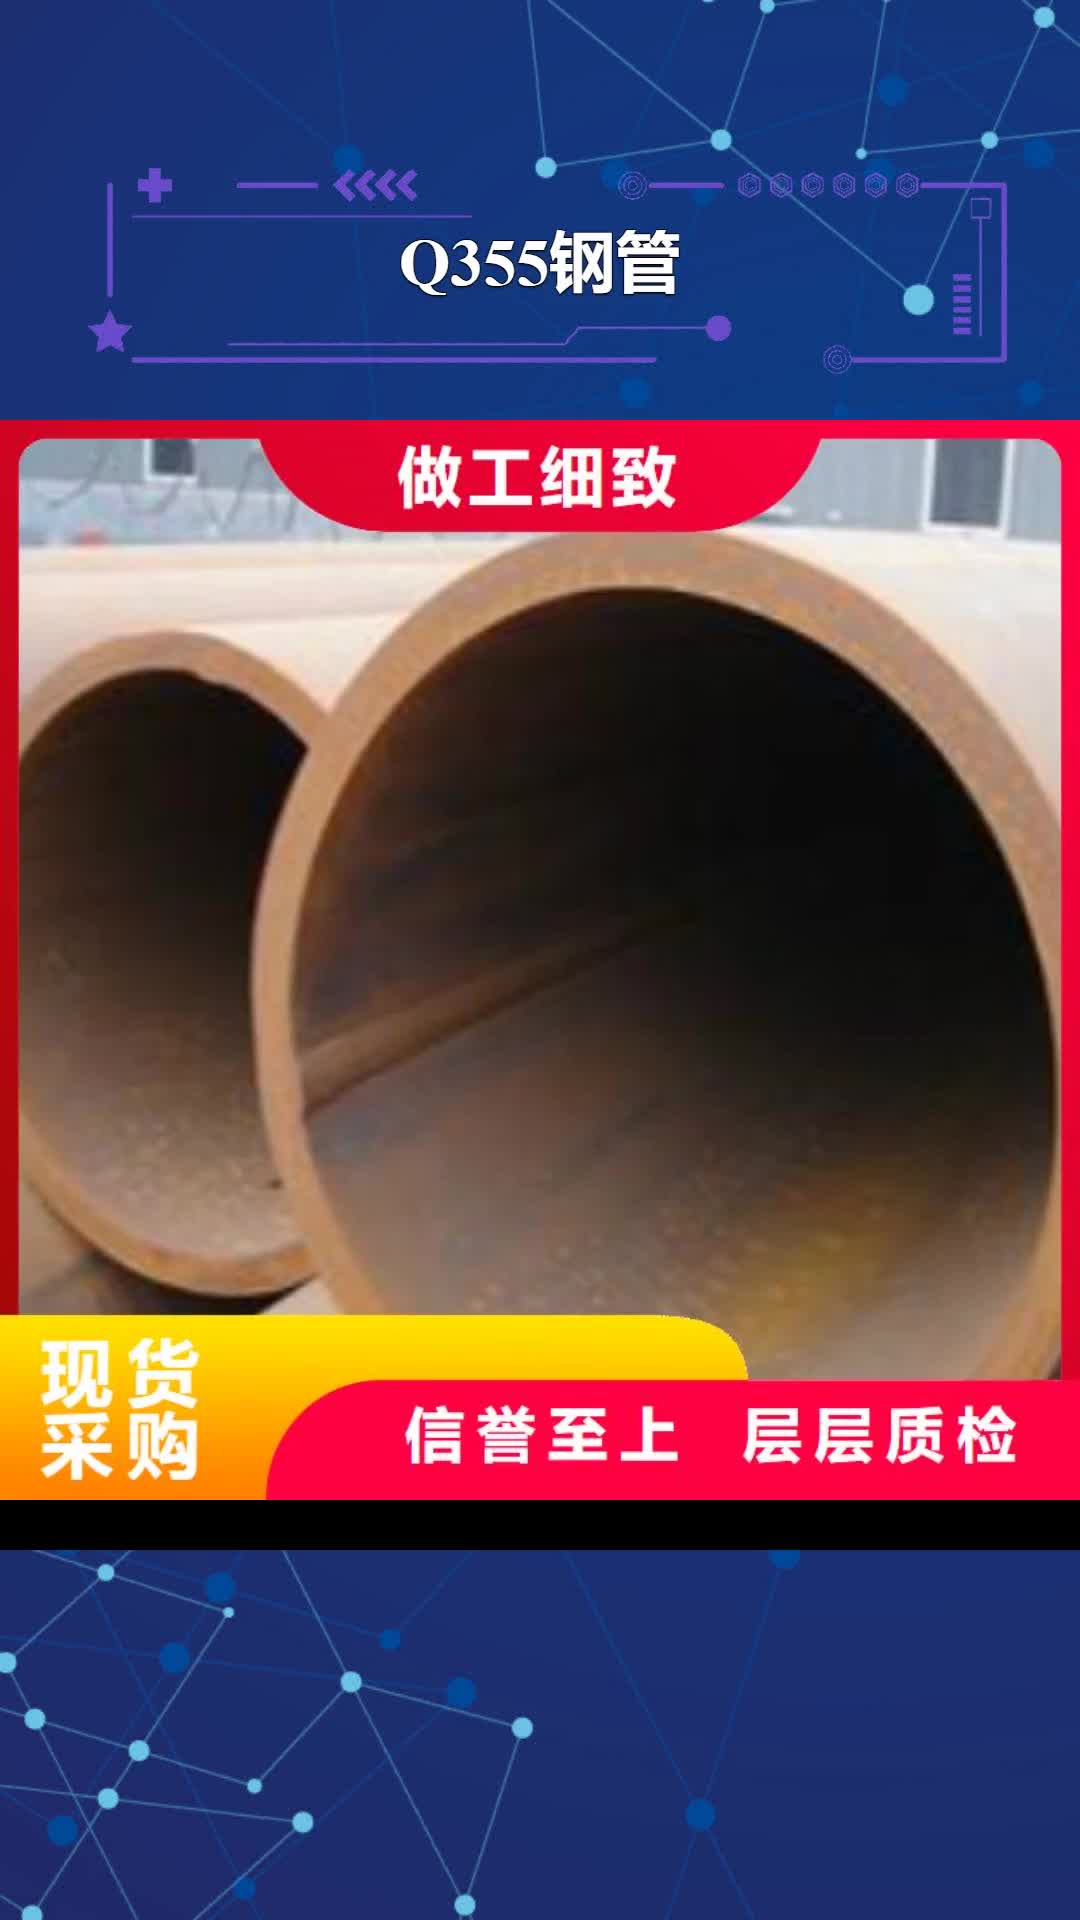 【咸阳 Q355钢管,L360管线管打造行业品质】